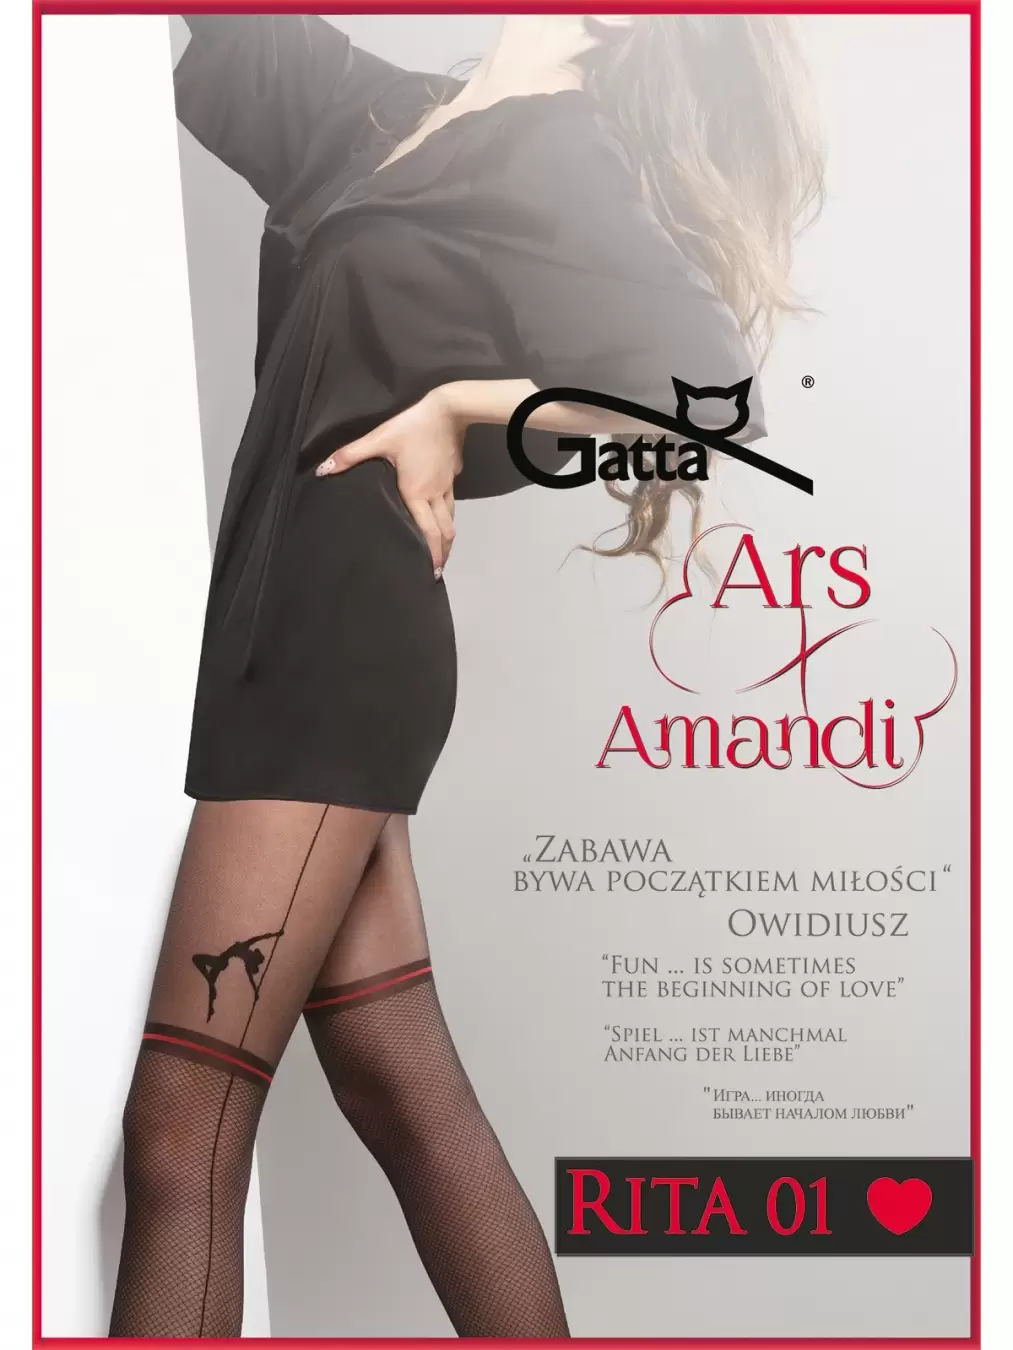 Gatta ARS AMANDI RITA 01, фантазийные колготки (изображение 1)